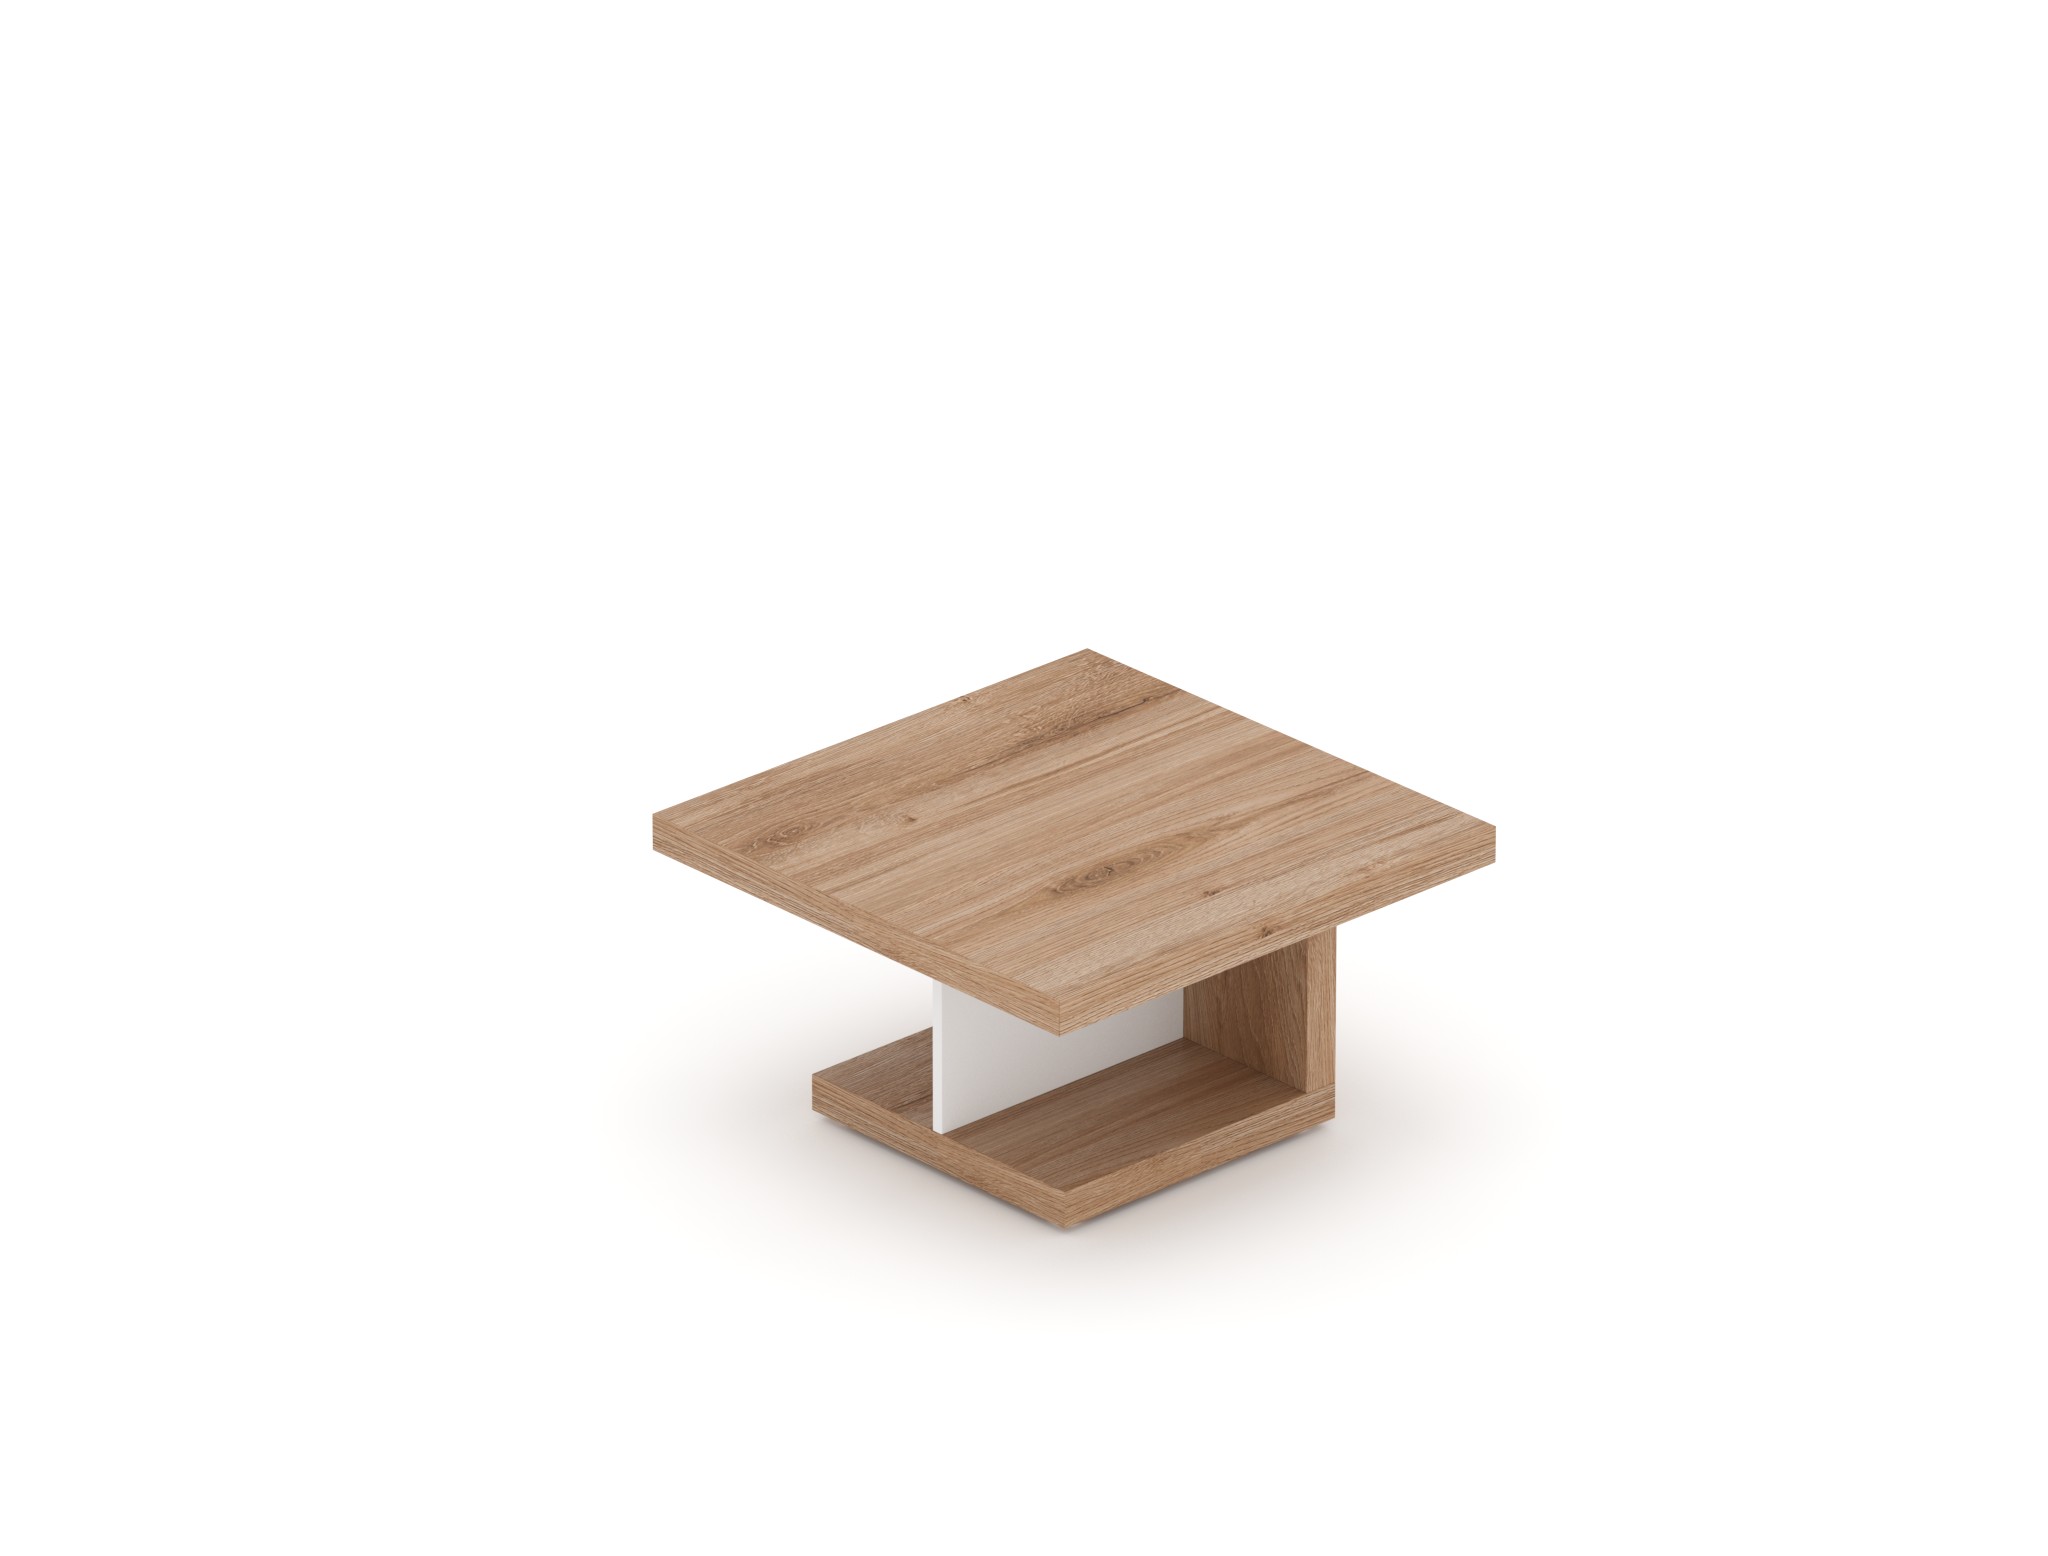 Manažerský konferenční stolek SOLID, čtvercový 80x80cm, výška 55cm